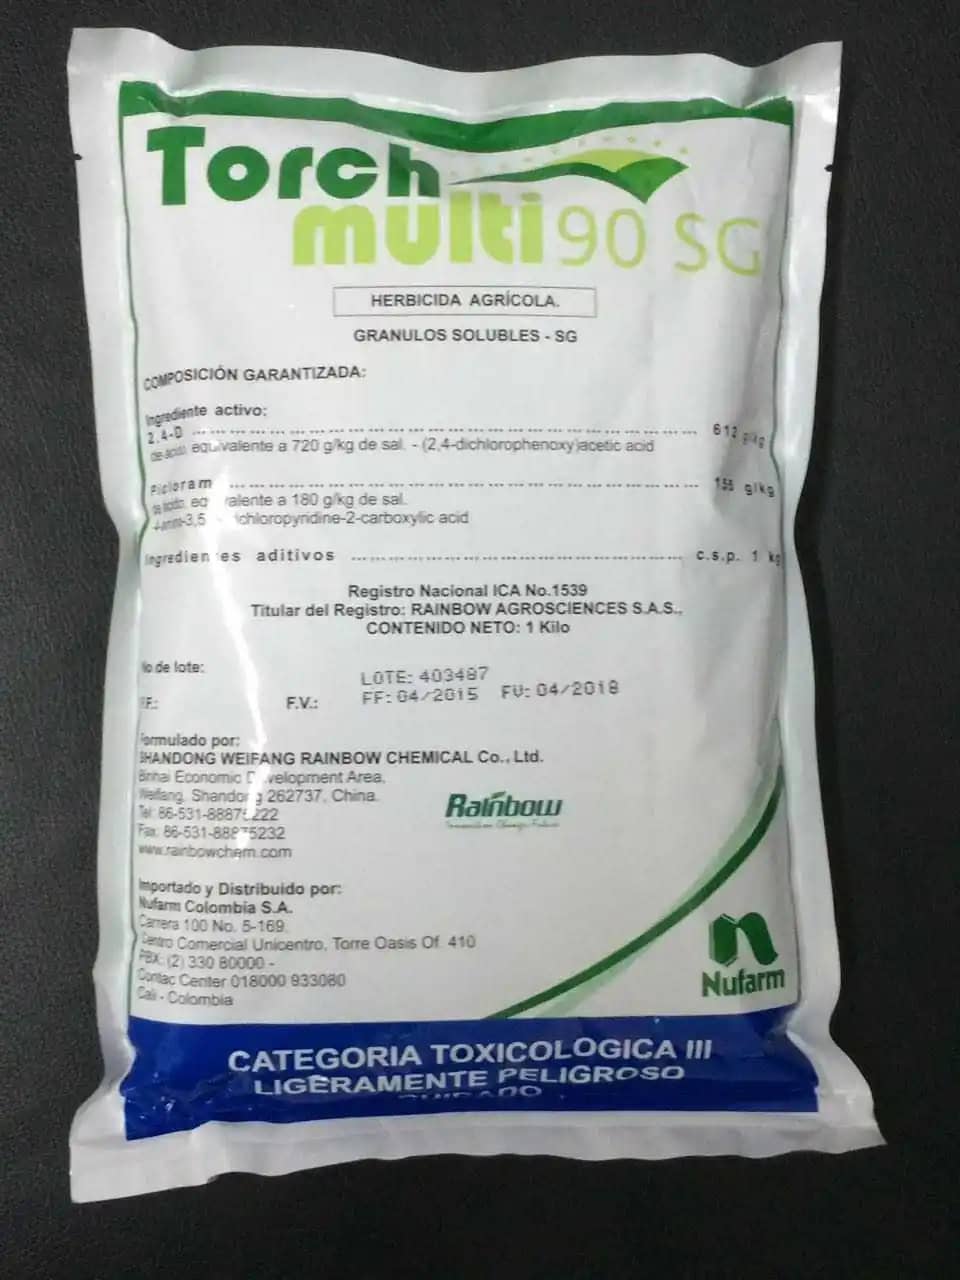 Herbicida Controler Platinum + 1 Kg Nufuron